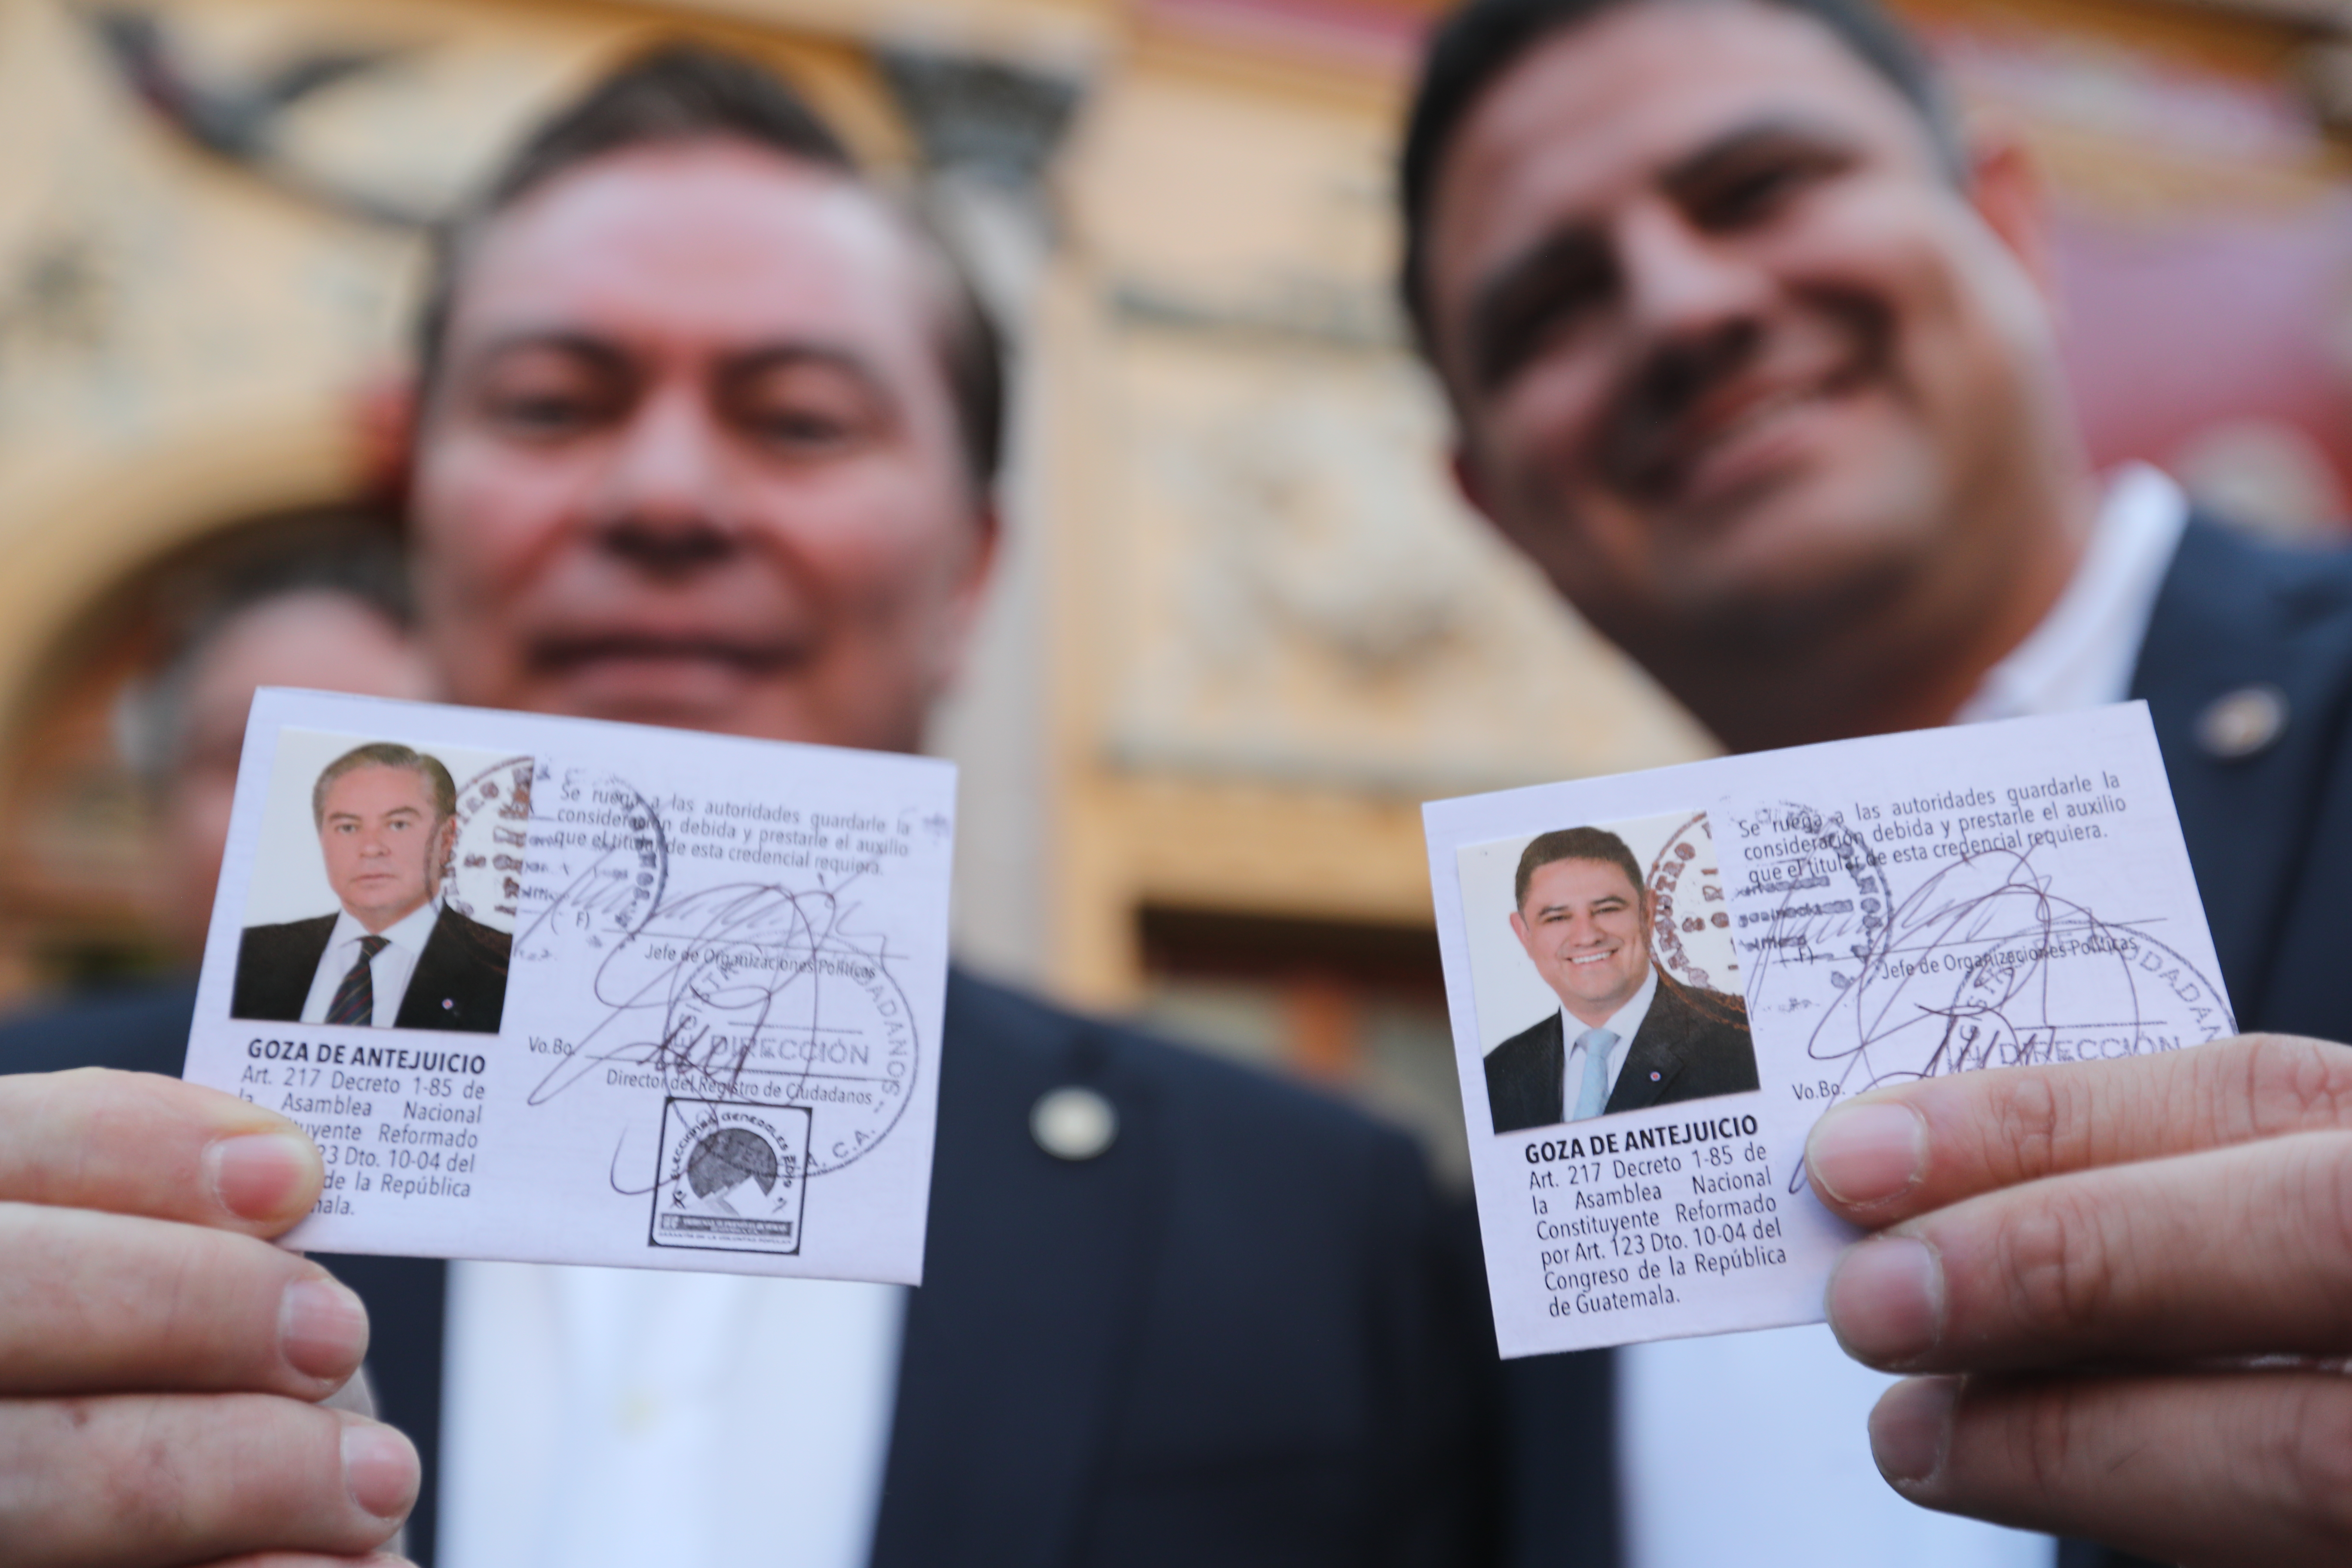 Javier Castillo, Mario Estrada, recibieron sus credenciales el 15 de febrero. Ahora, esa candidatura queda revocada. (Foto Prensa Libre: Erick Avila)